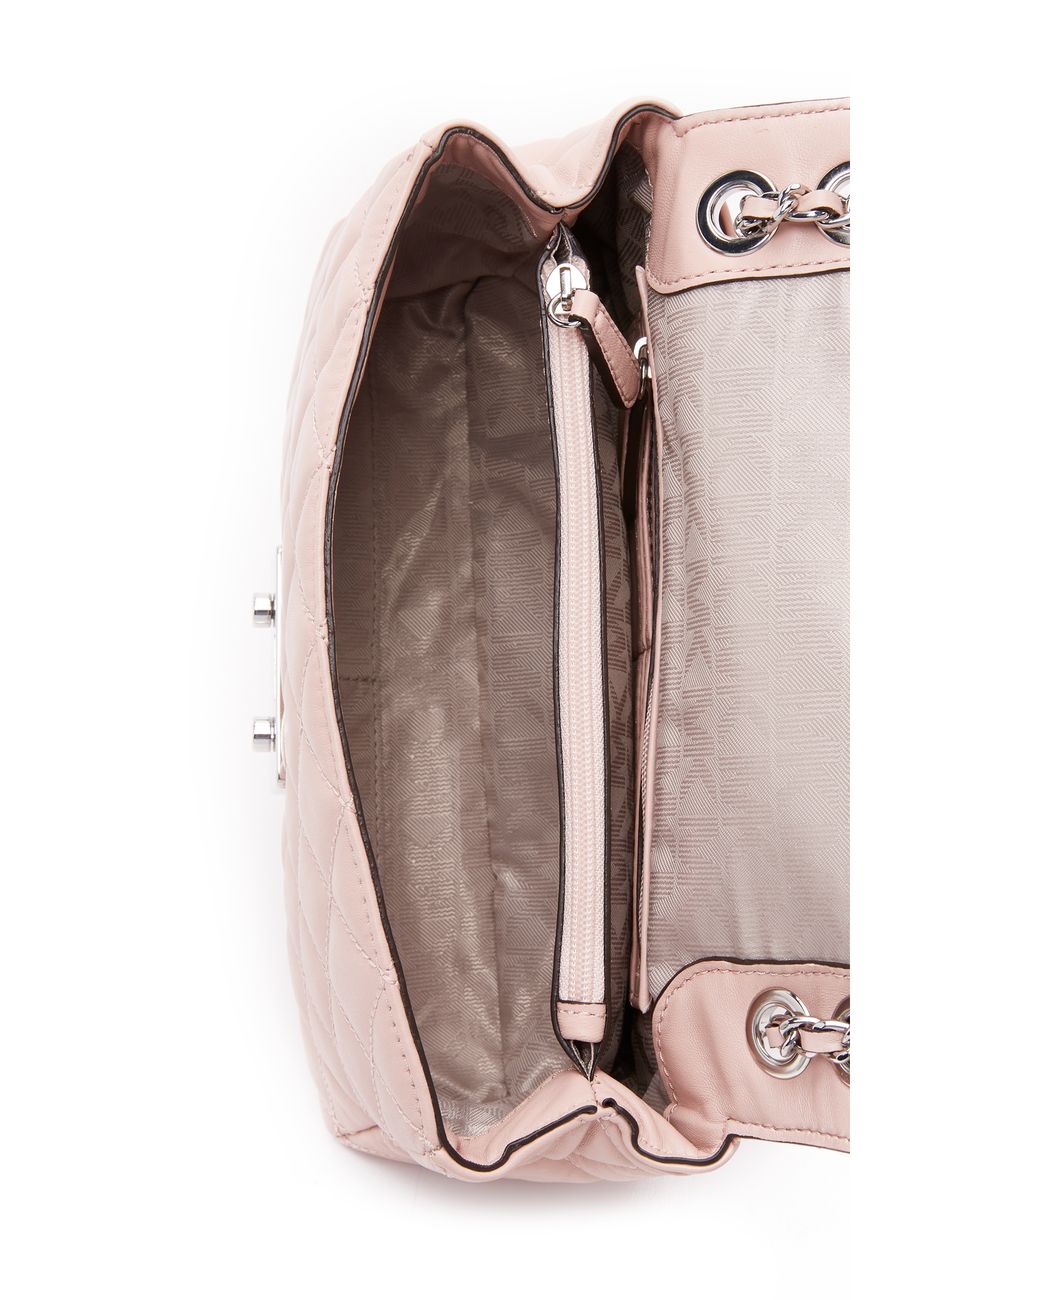 MICHAEL Michael Kors Sloan Large Chain Shoulder Bag - Ballet in Pink